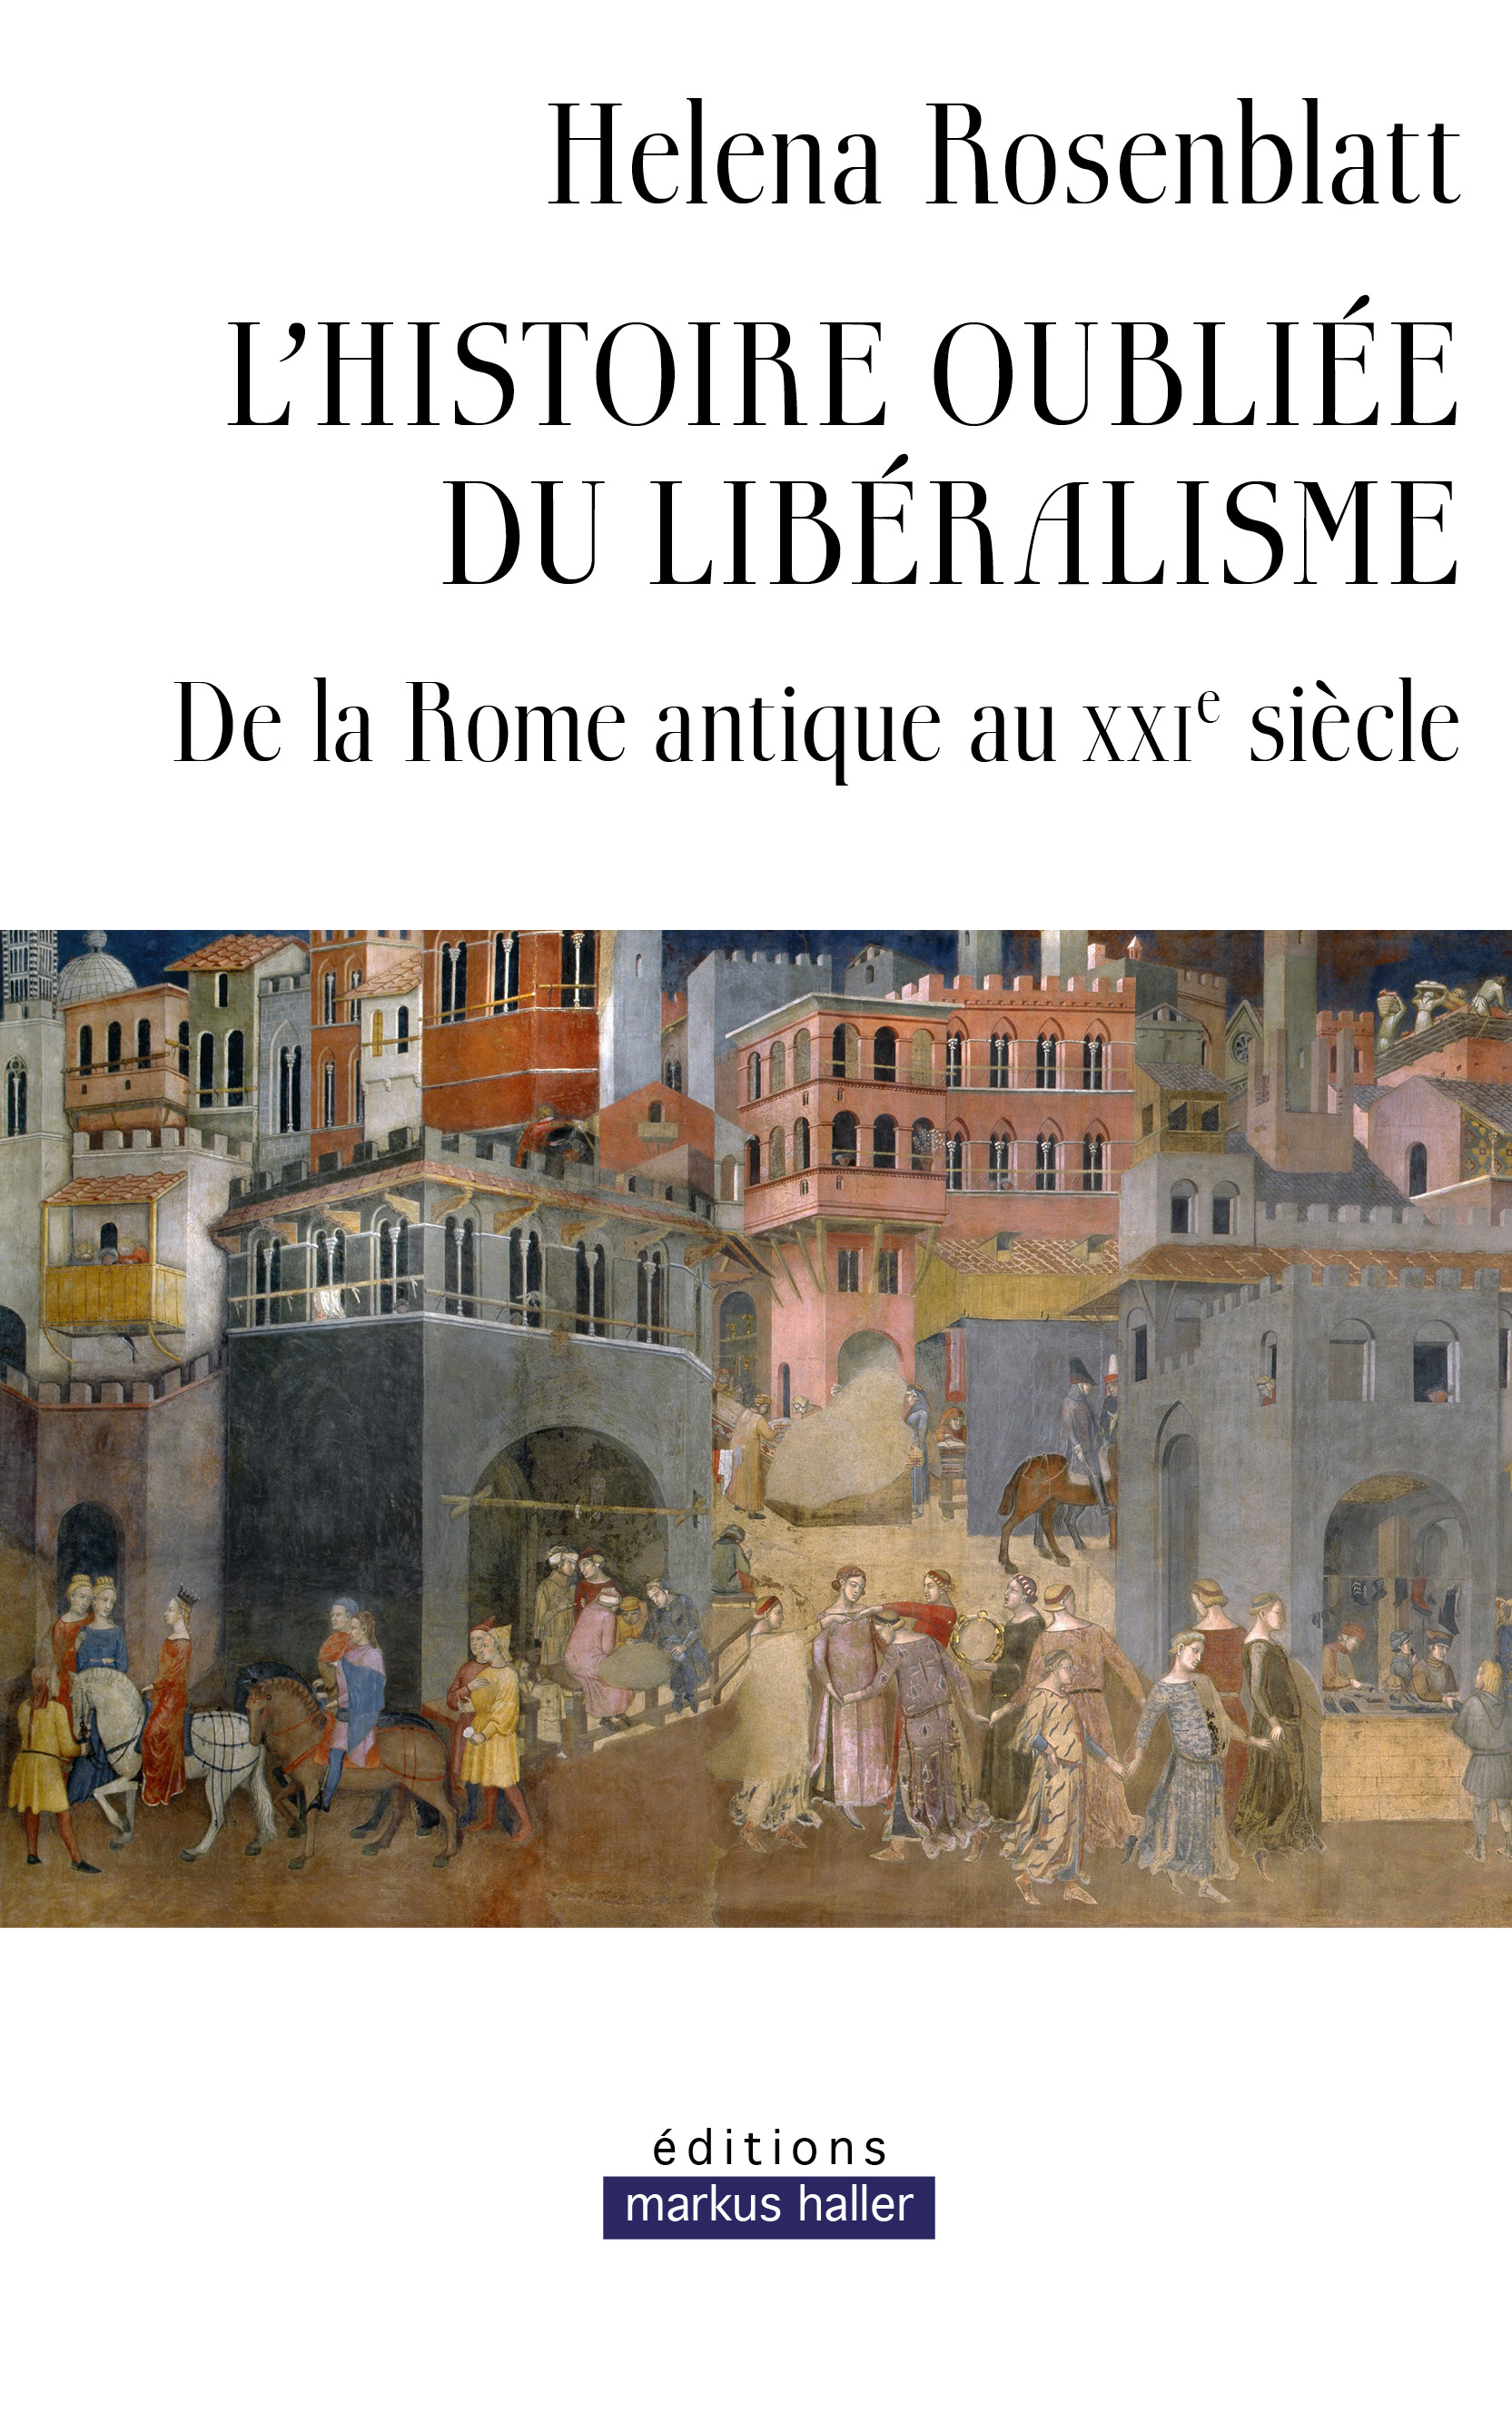 Rosenblatt Liberalism cover.jpg (original)